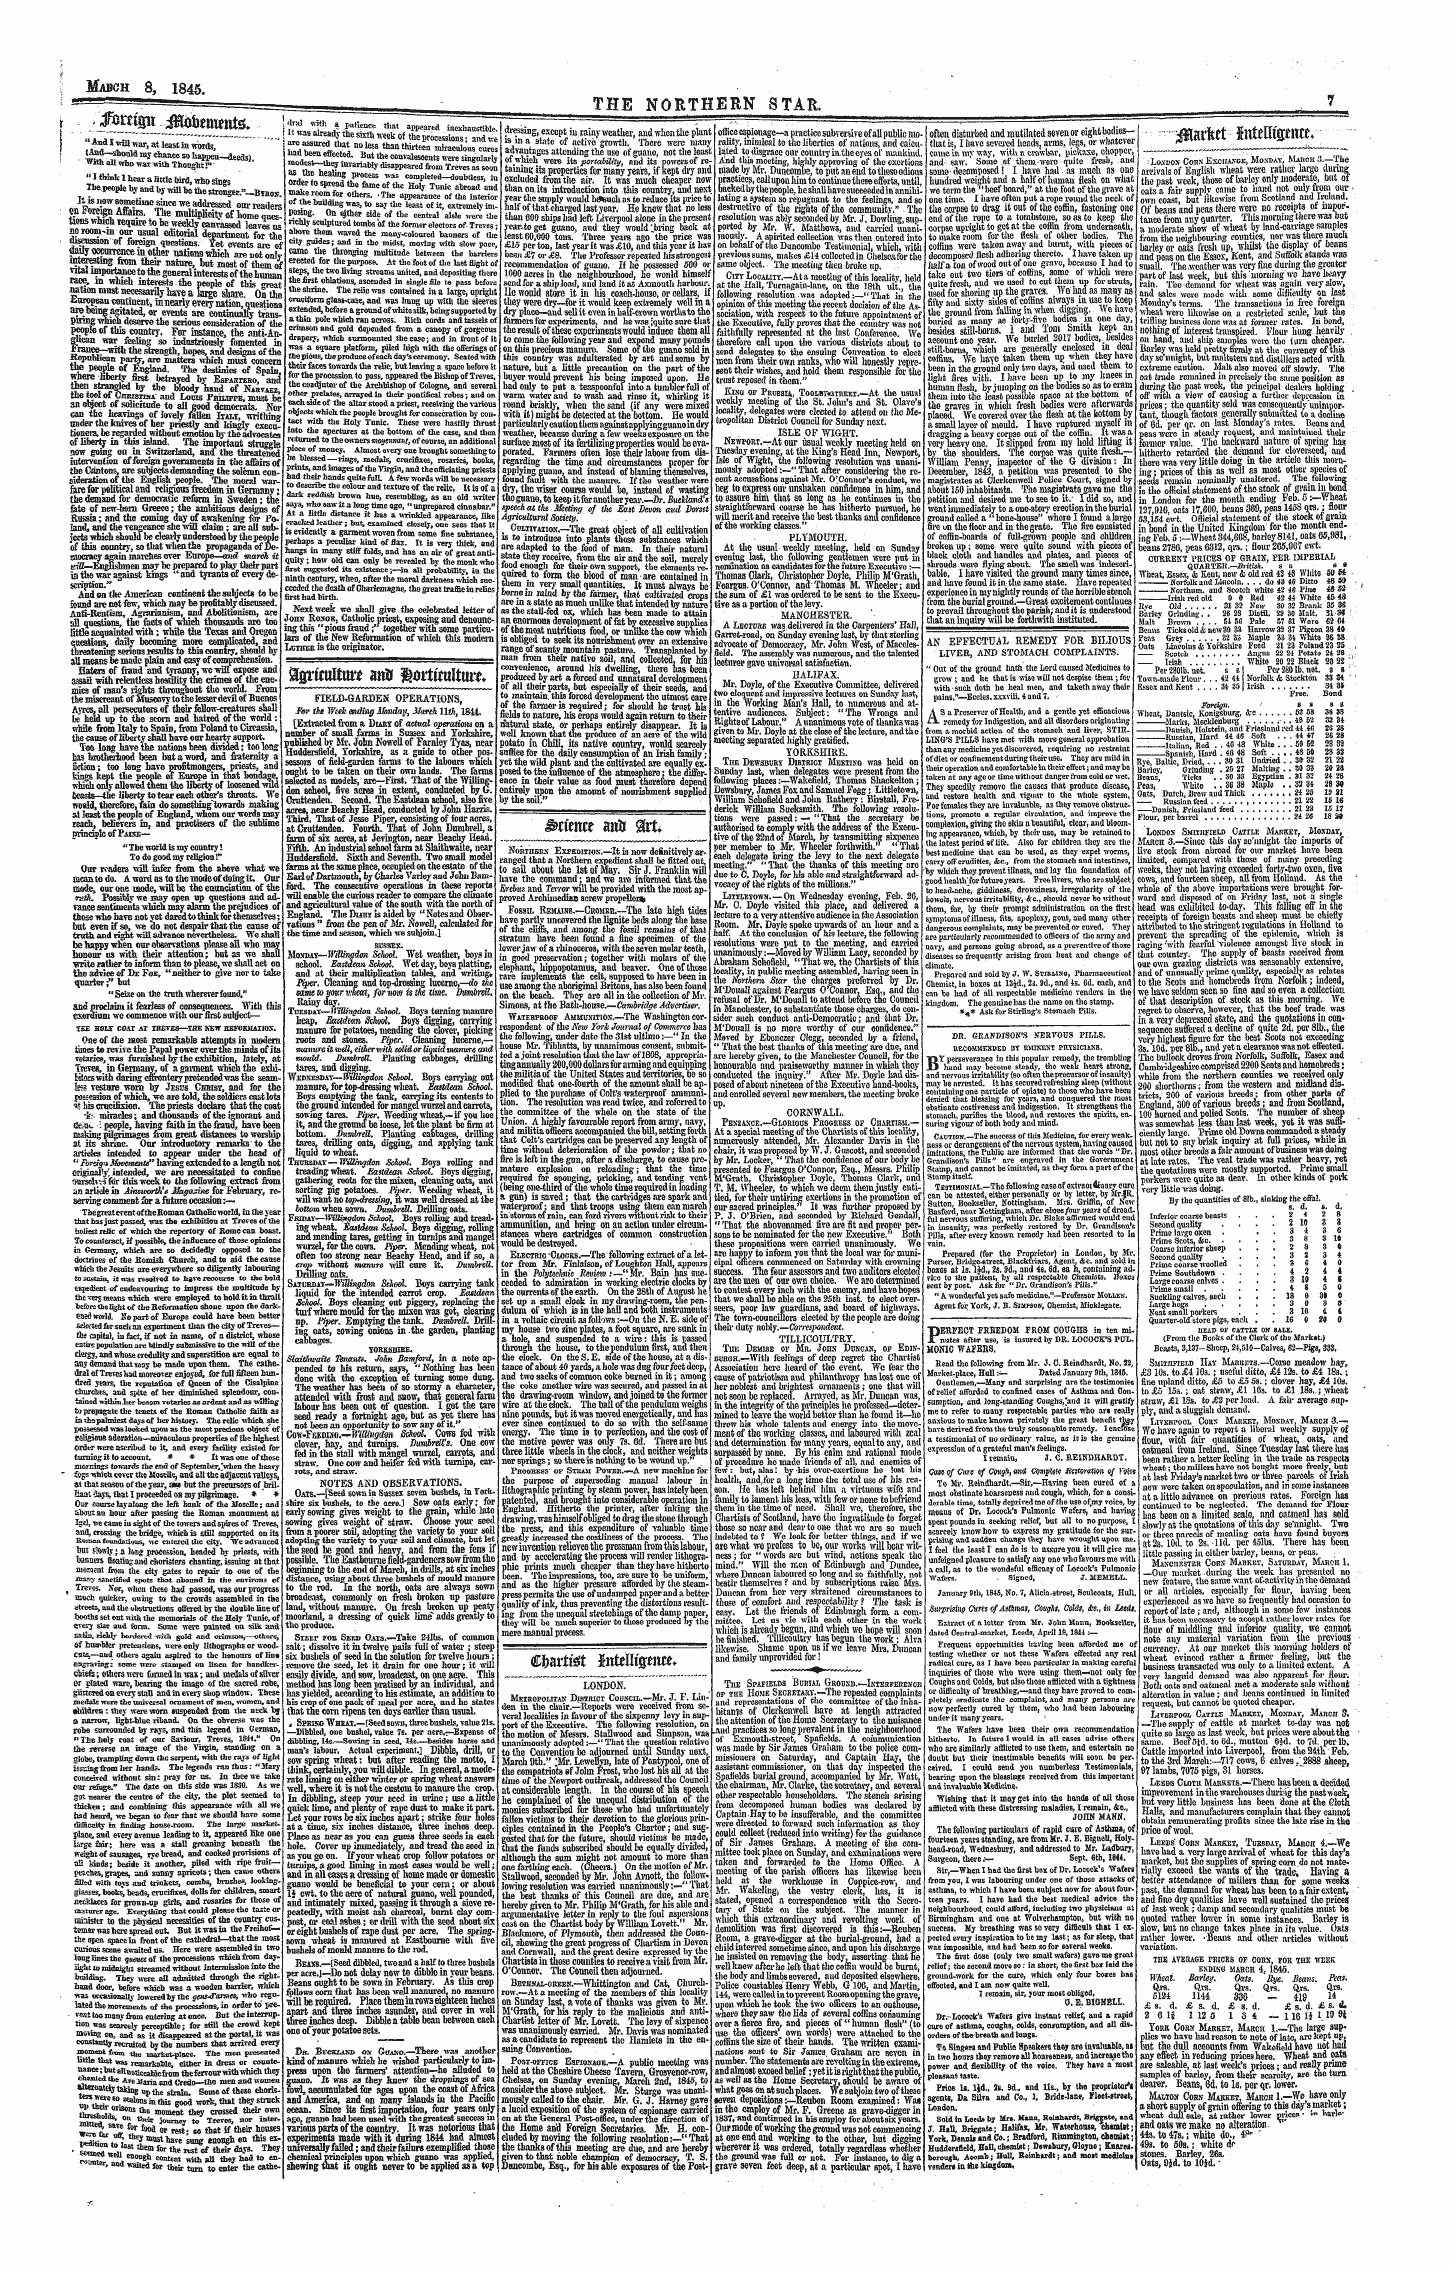 Northern Star (1837-1852): jS F Y, 1st edition - »^—^M^^M^^^*^- ¦ ¦ - — ^Larfeet Jutelligeme.